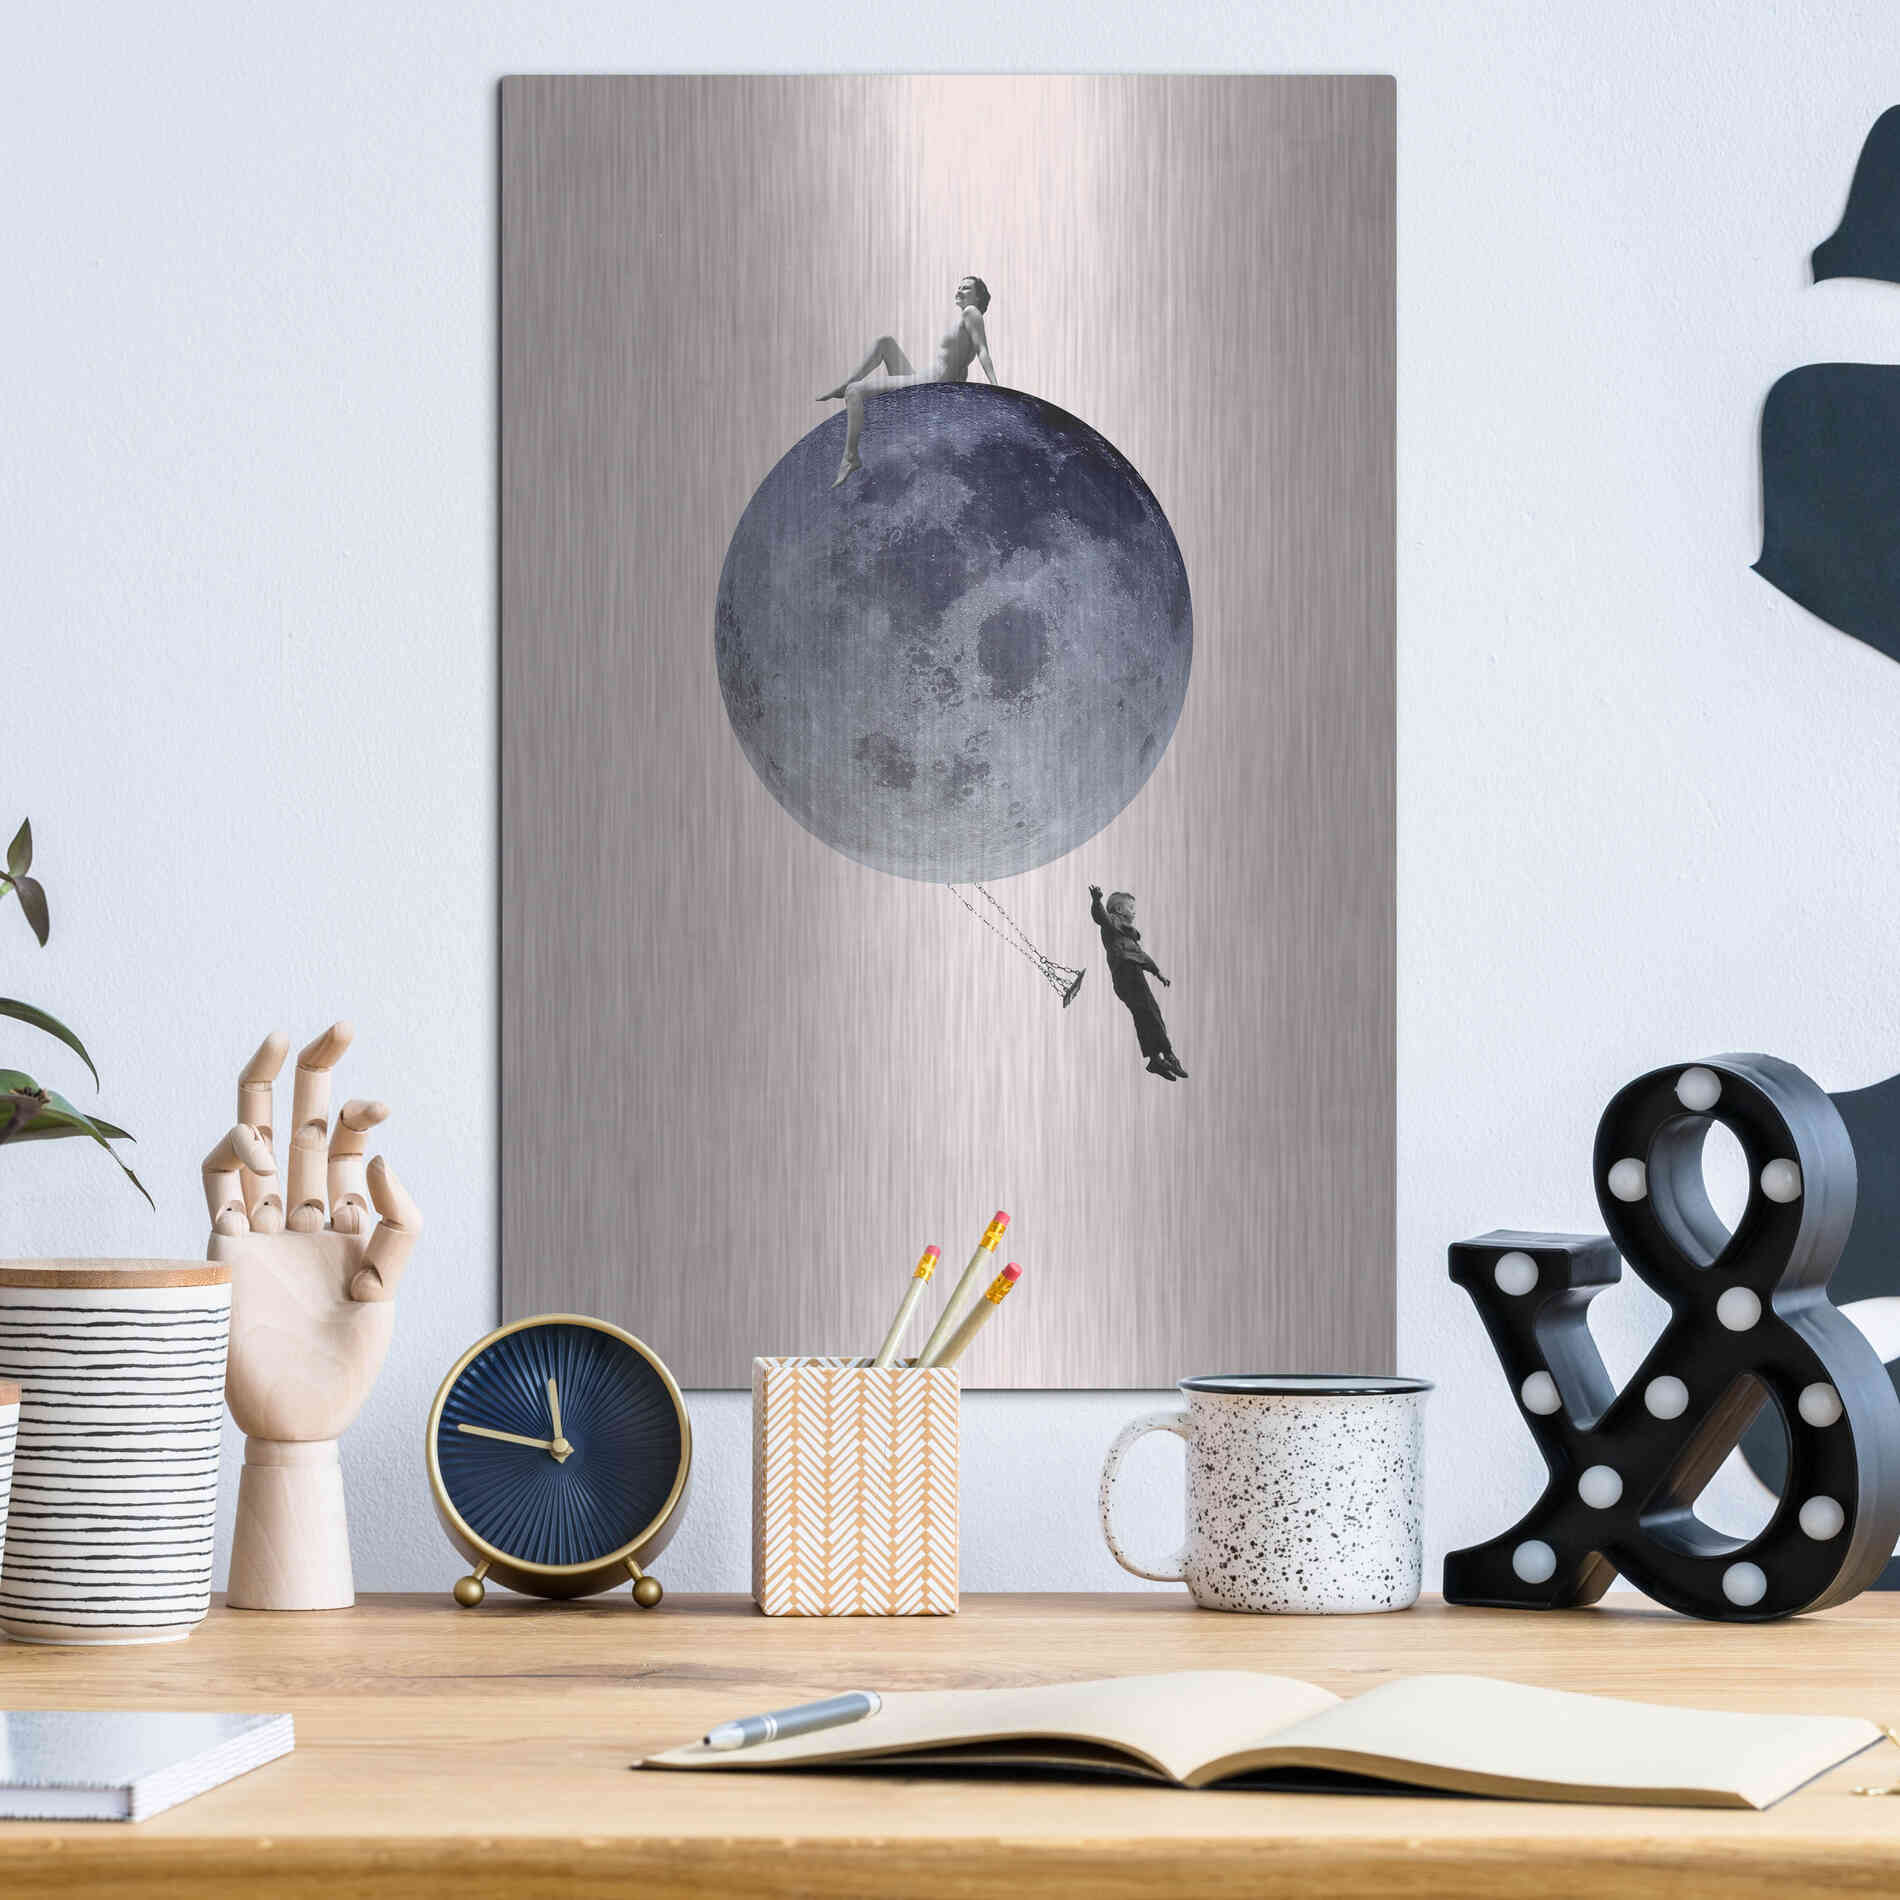 Luxe Metal Art 'Moon Jump' by Design Fabrikken, Metal Wall Art,12x16